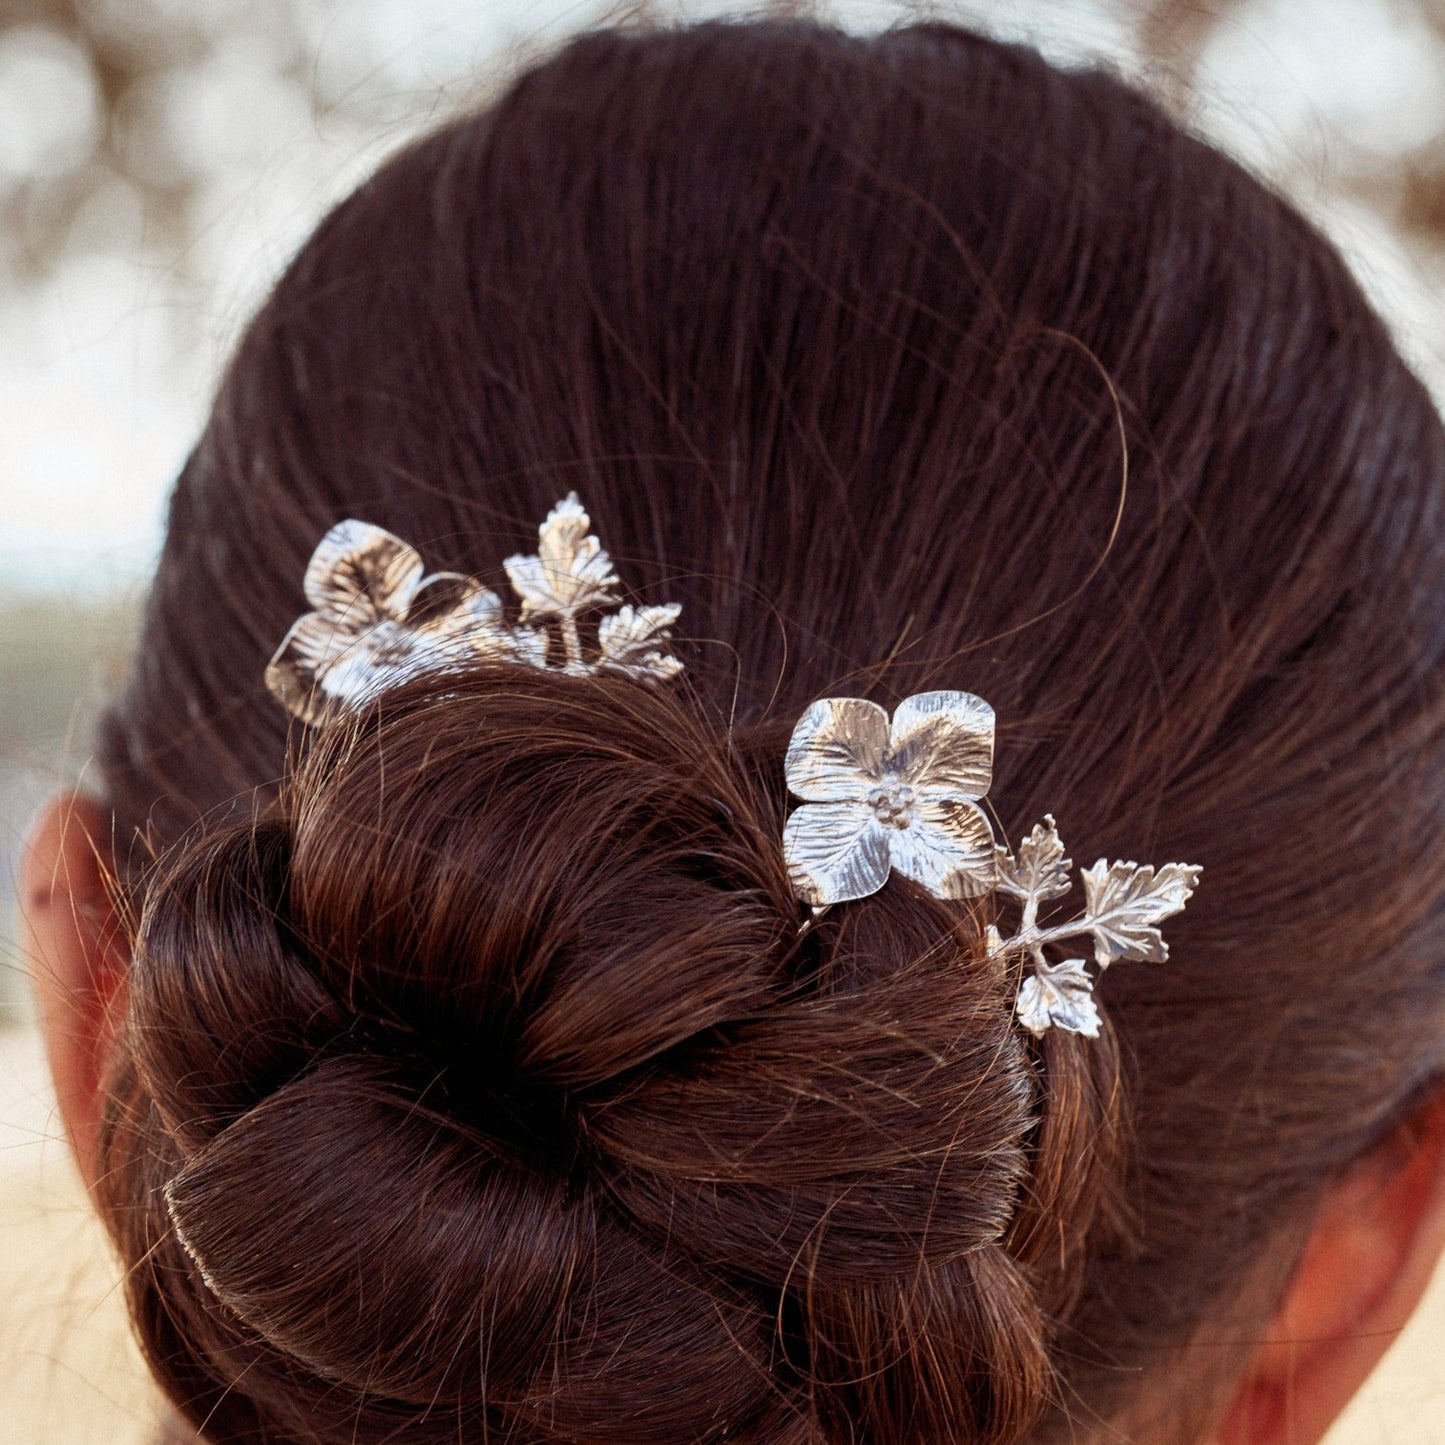 Peinado de fiesta mujer, adornado con las Horquilllas Spring, creando un bonito contraste entre el color del pelo y el color de la plata.